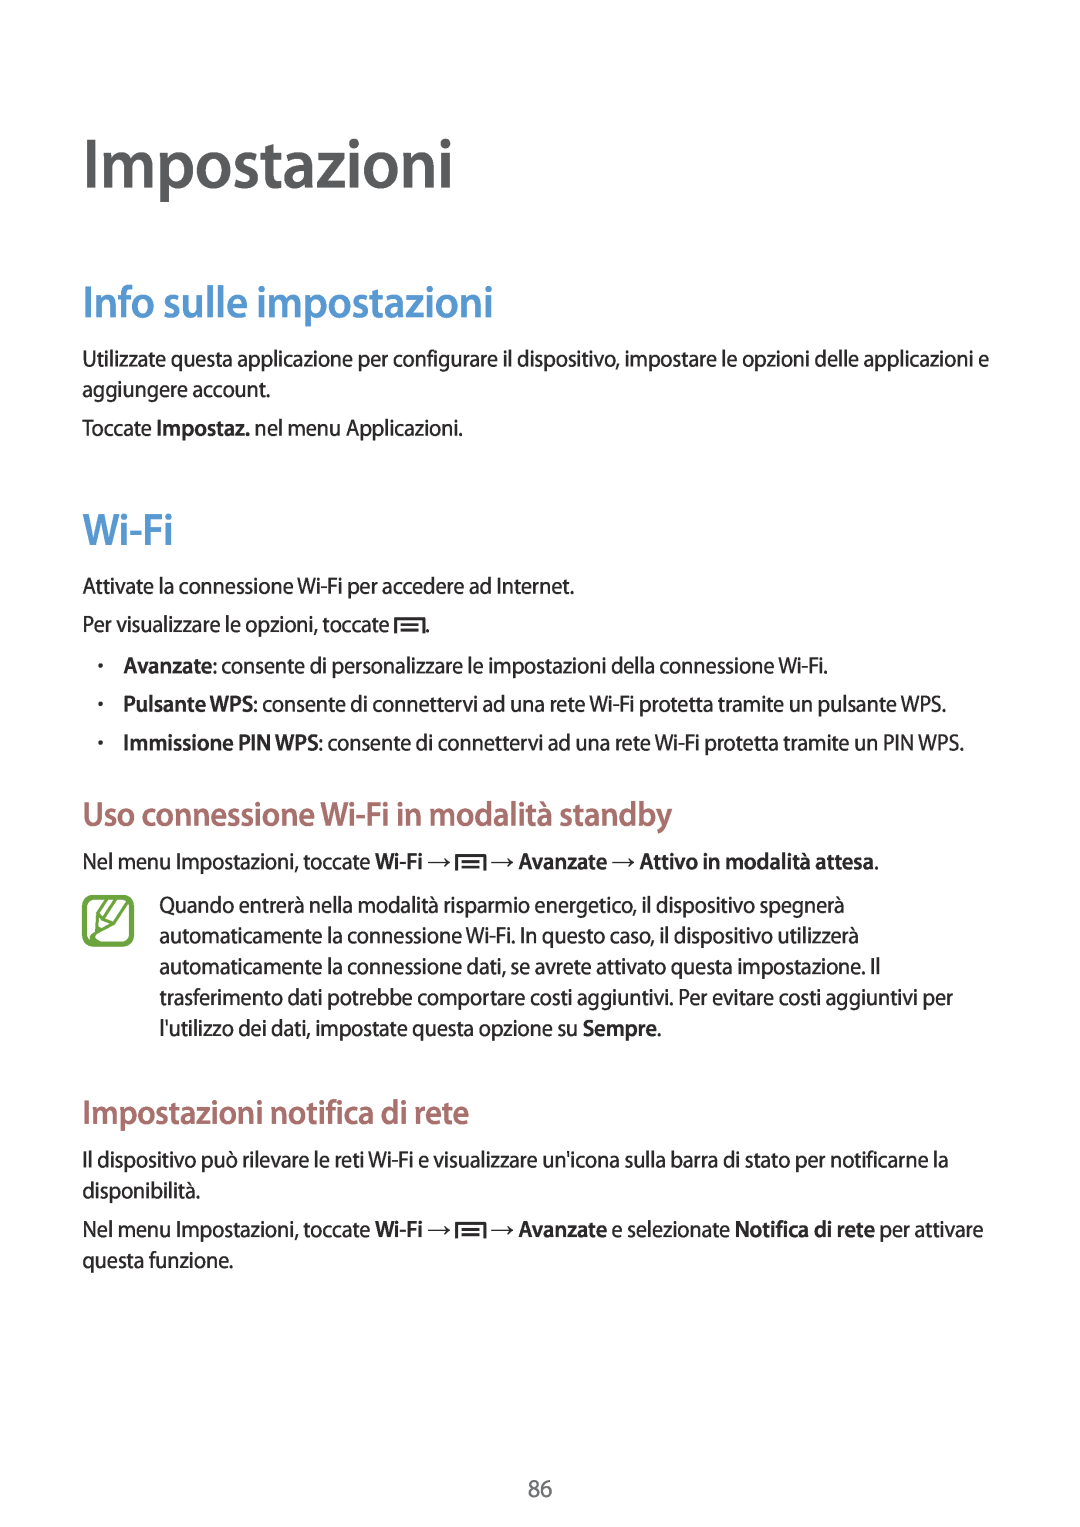 Samsung GT-S6810PWNITV manual Impostazioni, Info sulle impostazioni, Uso connessione Wi-Fi in modalità standby 